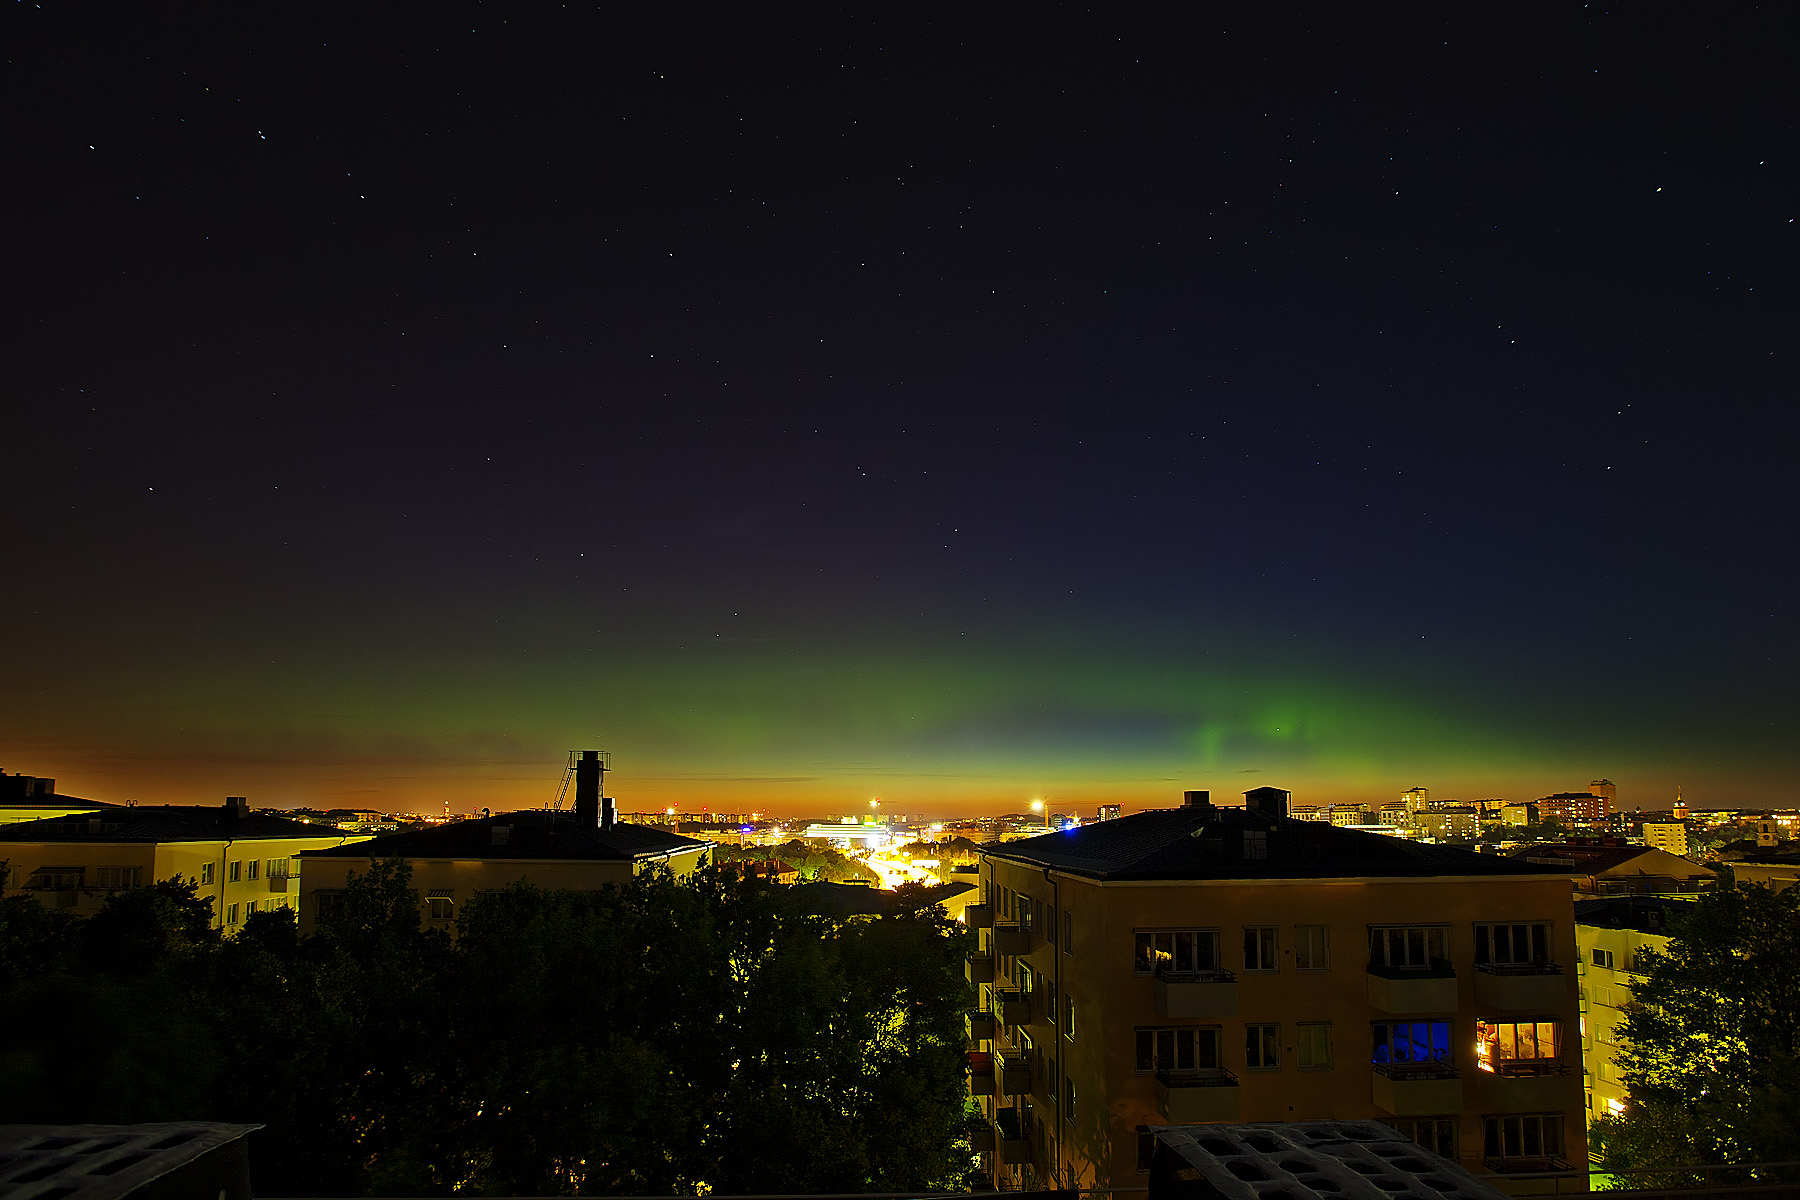 Les lueurs boréales au-dessus de Stockholm (Suède), le 5 août à 1 h 36 (heure locale, identique l'heure française), une image publiée sur le site Spaceweather. © Peter Rosén